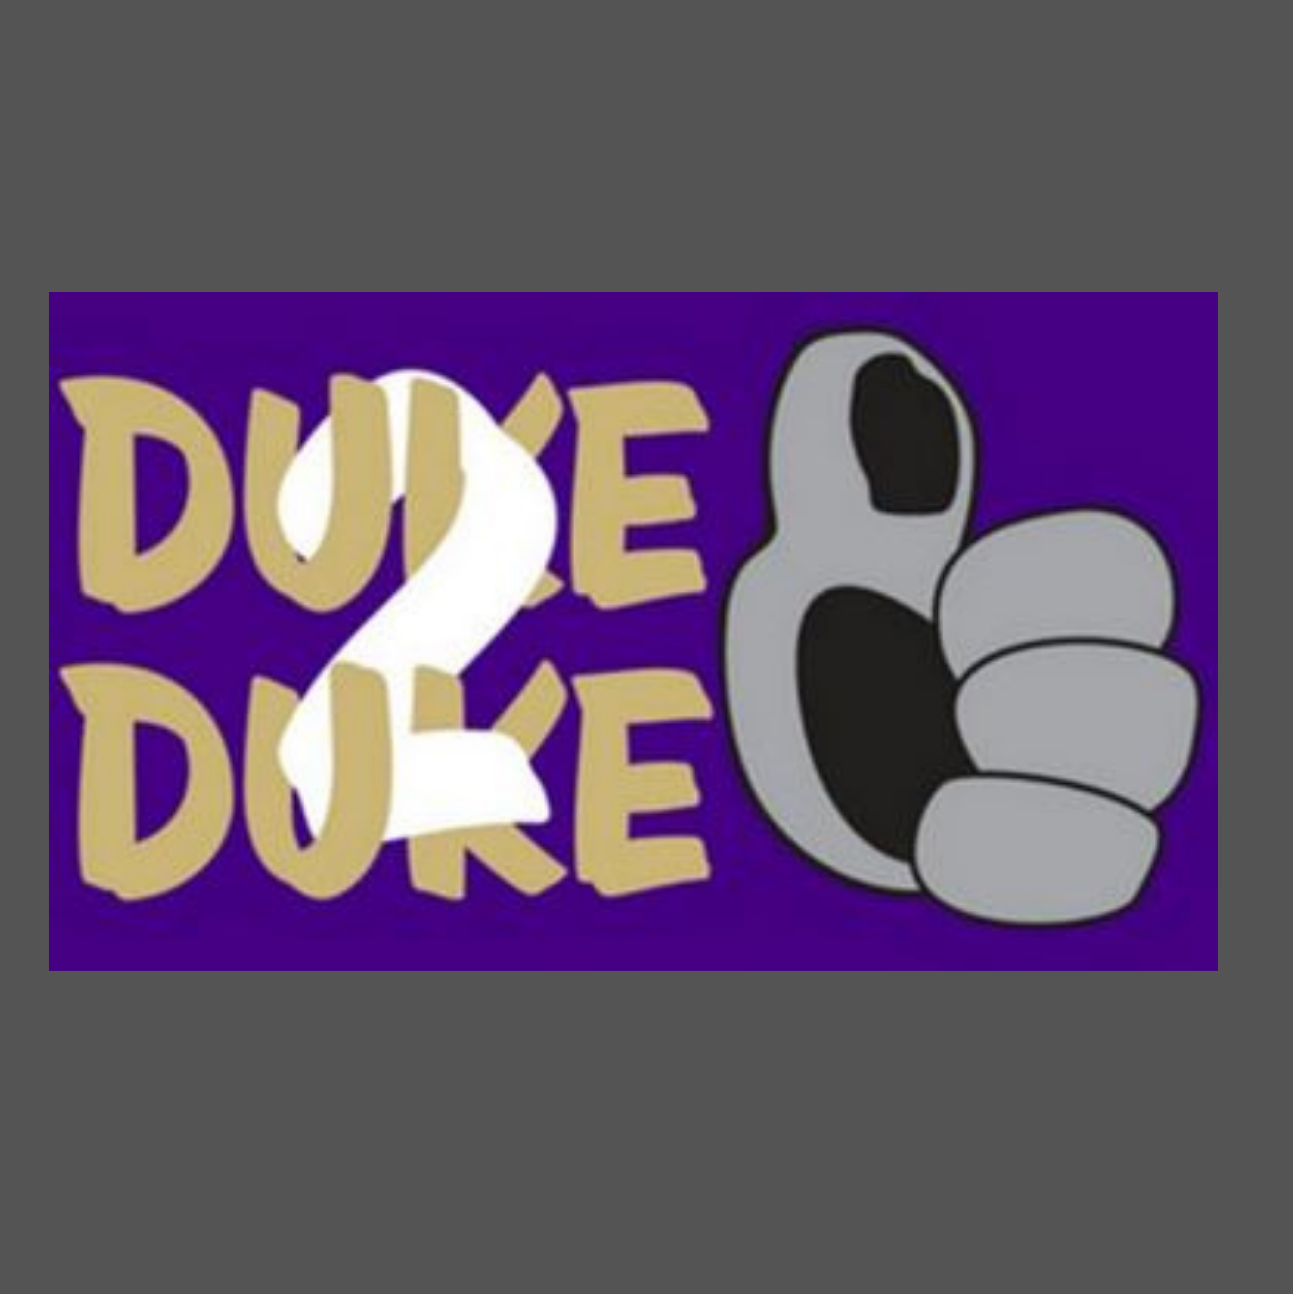 Duke2Duke - Peer Recognition